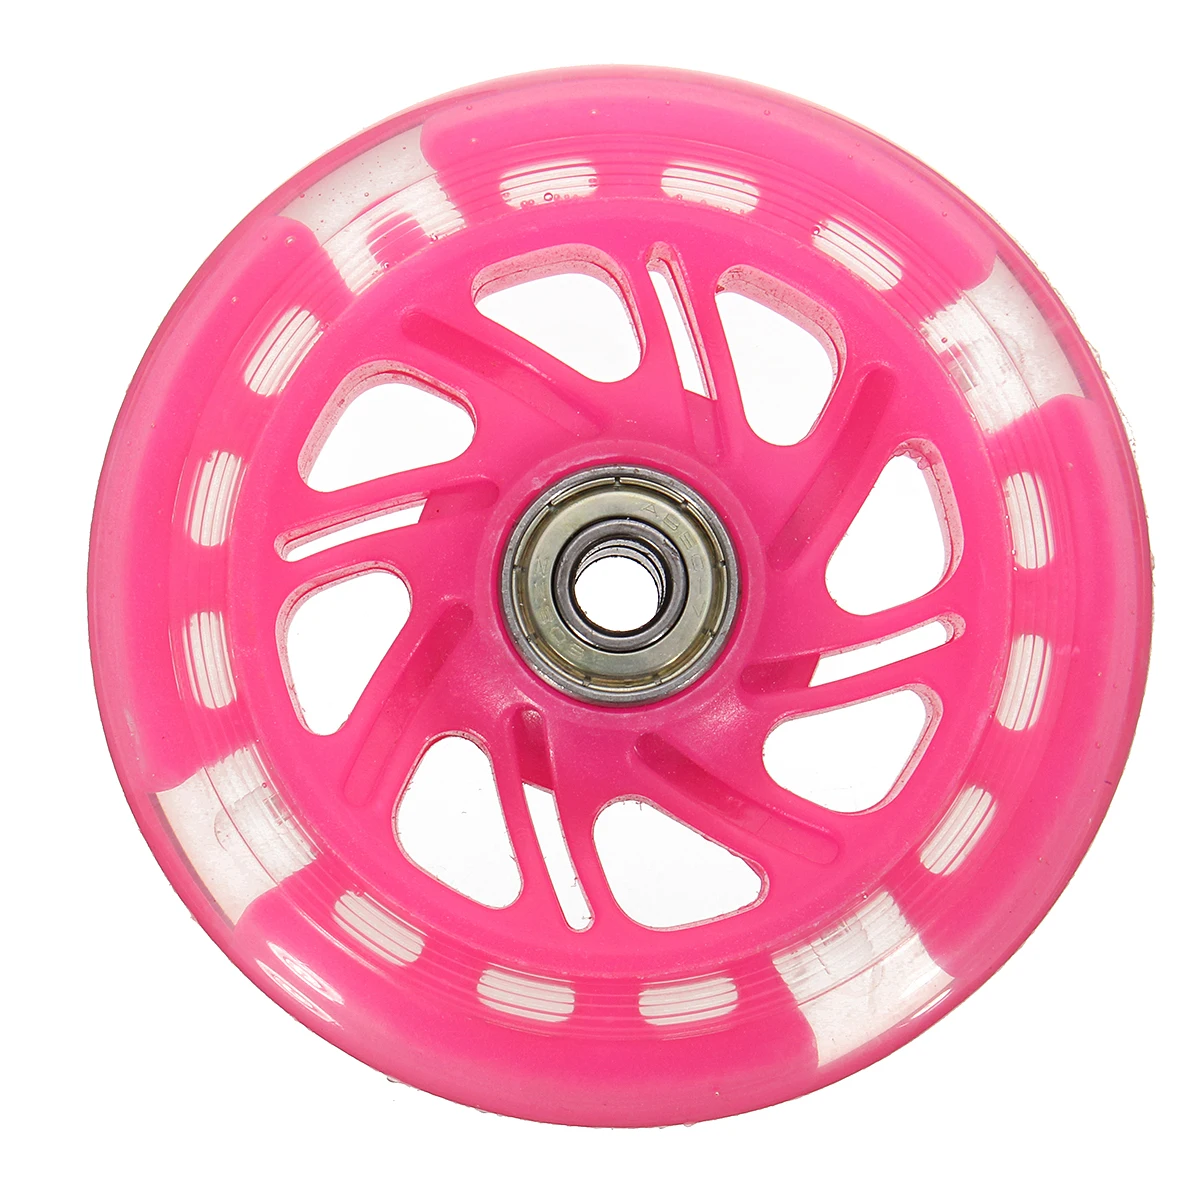 Новое поступление 100 колесо для скутера светодиодный вспышка светильник колеса для мини-скутер с 2 ABED-7 Подшипники черный, розовый цвет зеленый, синий - Цвет: Розовый